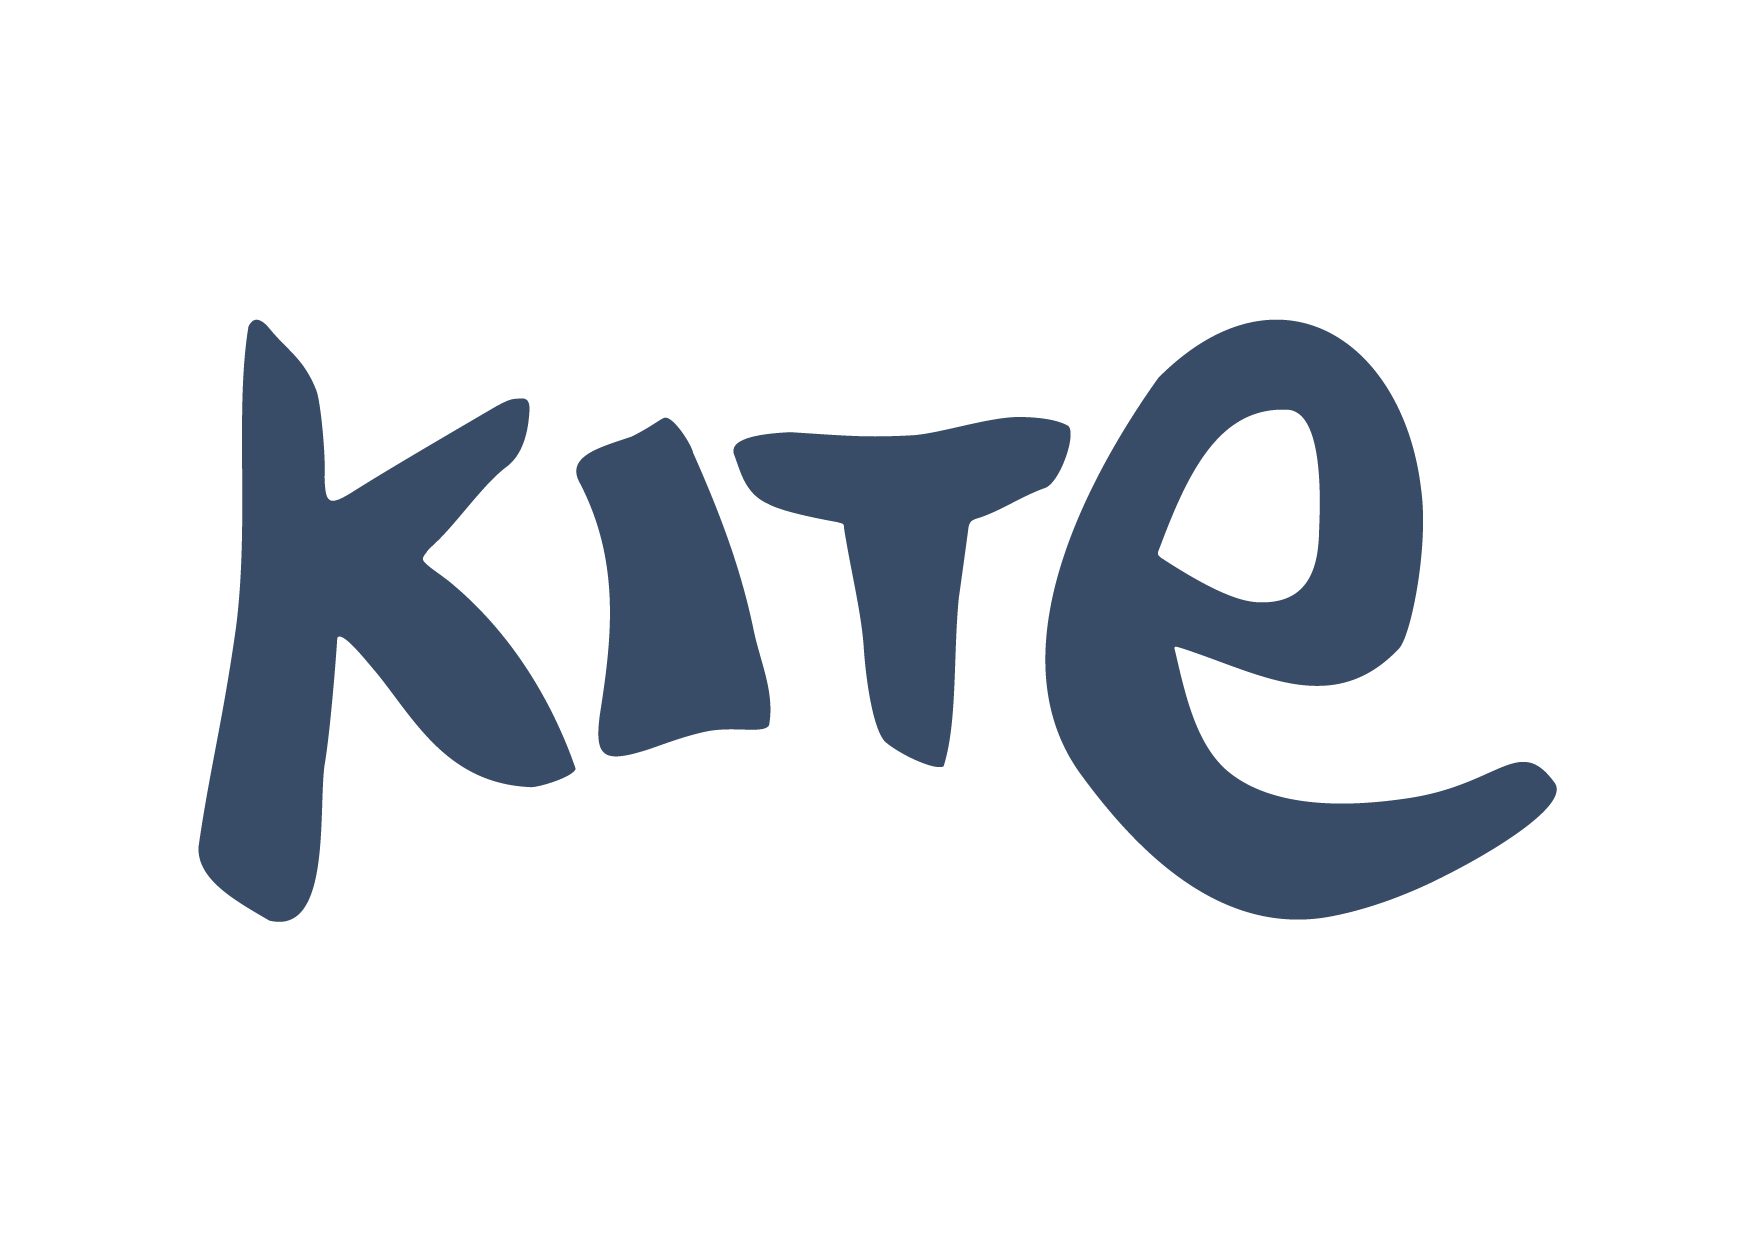 Kite Clothing